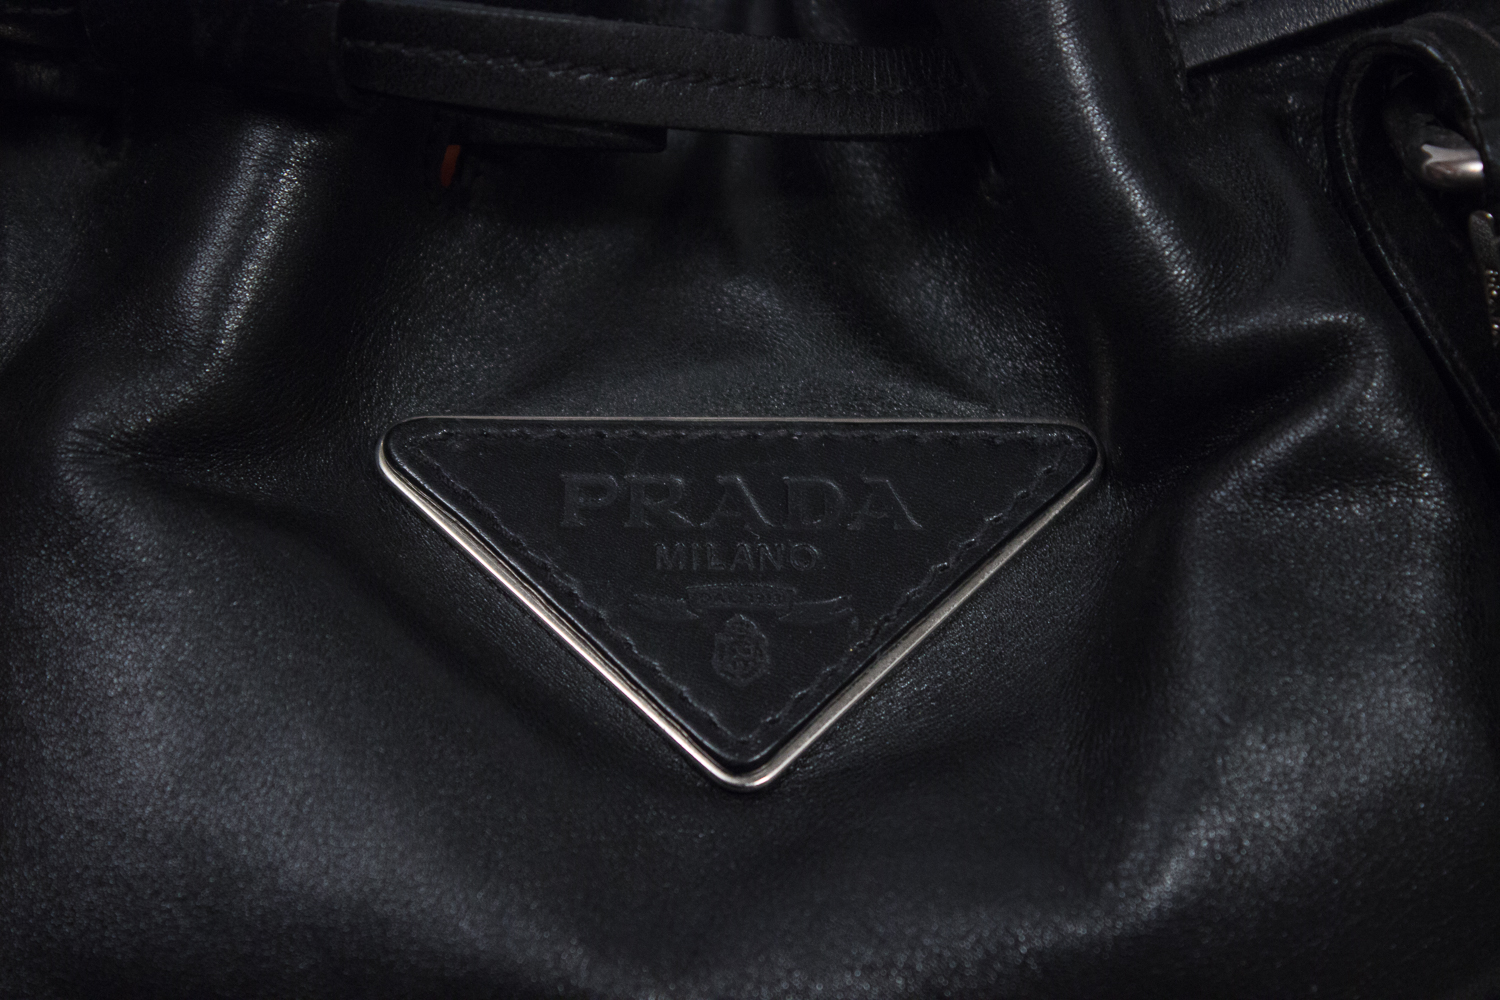 Trésor de femme Prada sac noir cuir GM 3